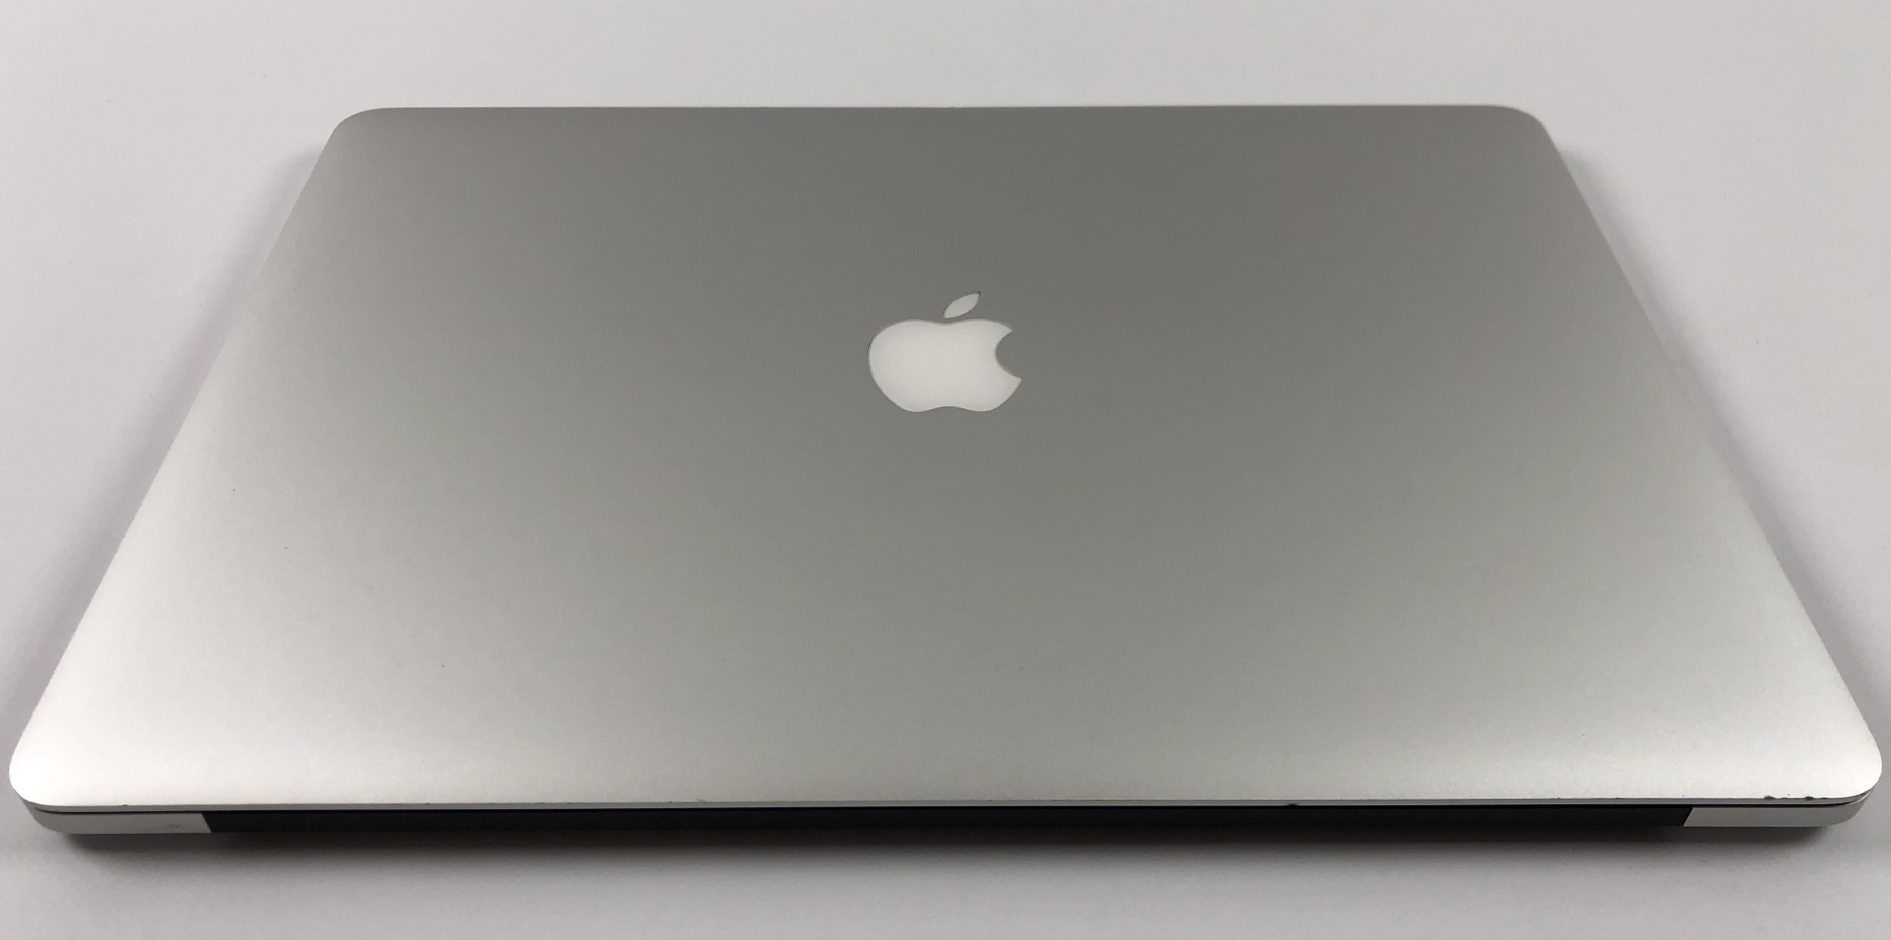 MacBook Pro Retina 15" Mid 2015 (Intel Quad-Core i7 2.2 GHz 16 GB RAM 256 GB SSD), Intel Quad-Core i7 2.2 GHz, 16 GB RAM, 256 GB SSD, Afbeelding 2